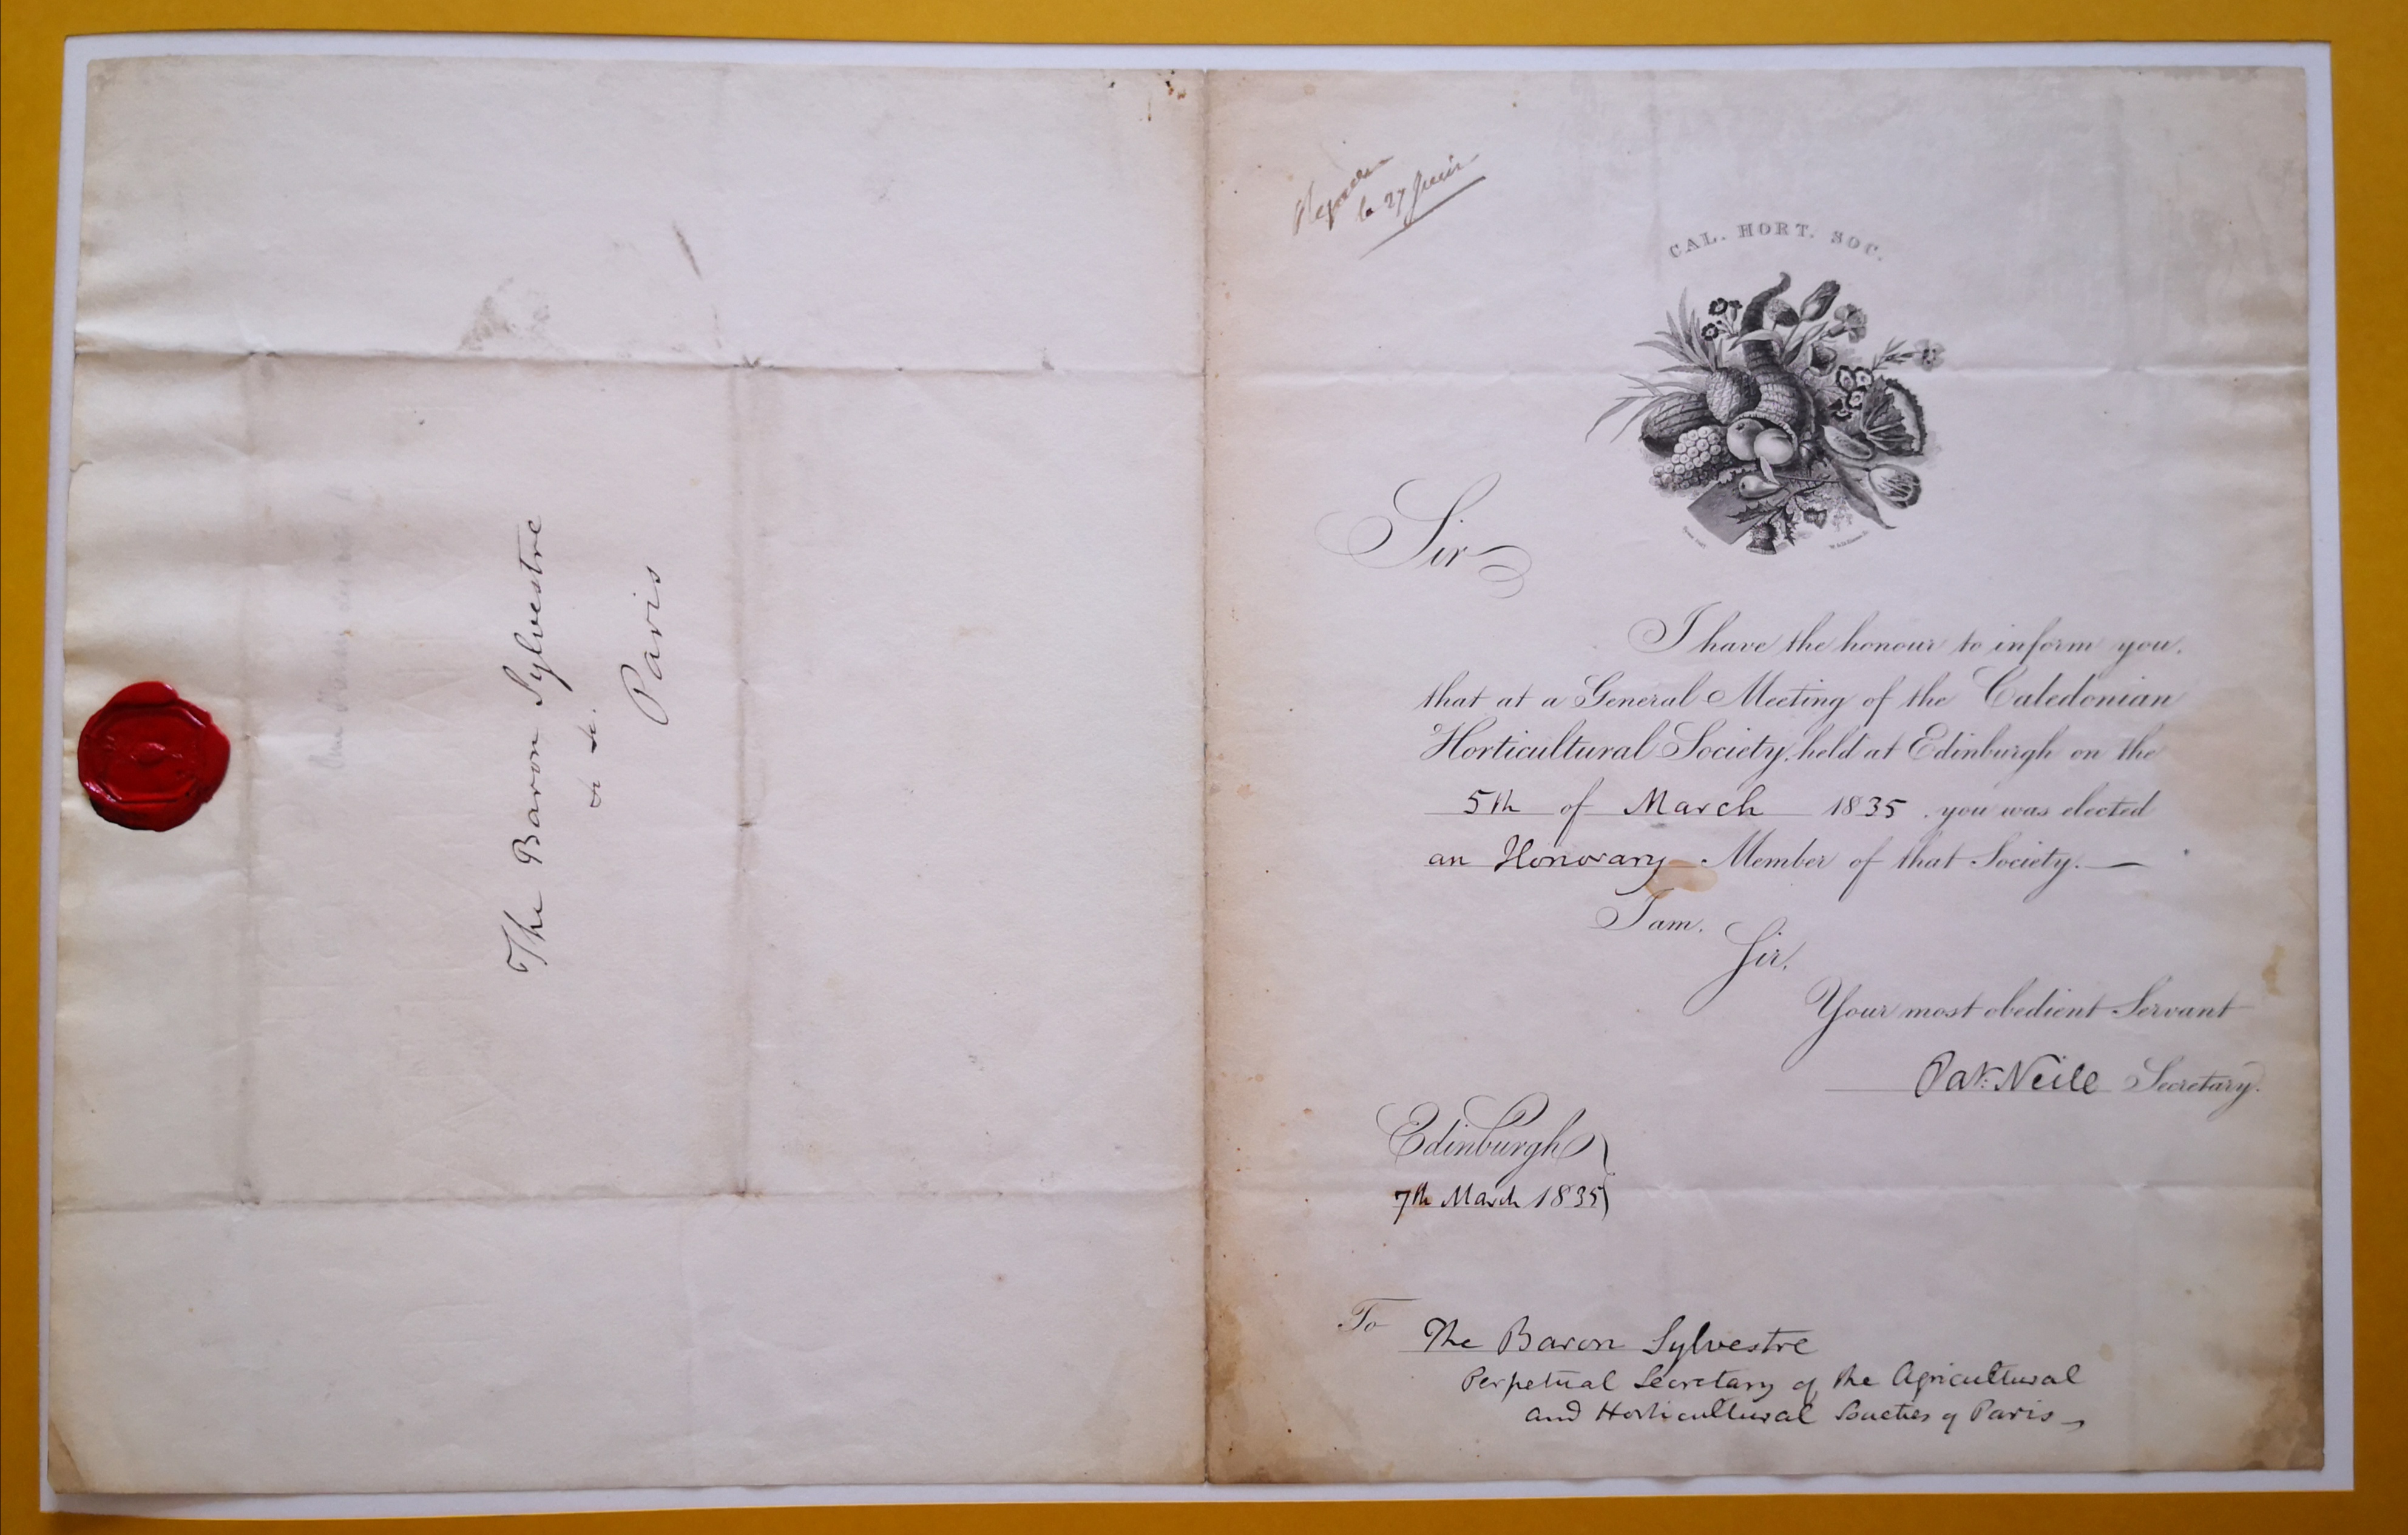  Lettre de membre d'honneur de la Caledonian Horticultural Society pour Augustin-François de Silvestre - Document 1